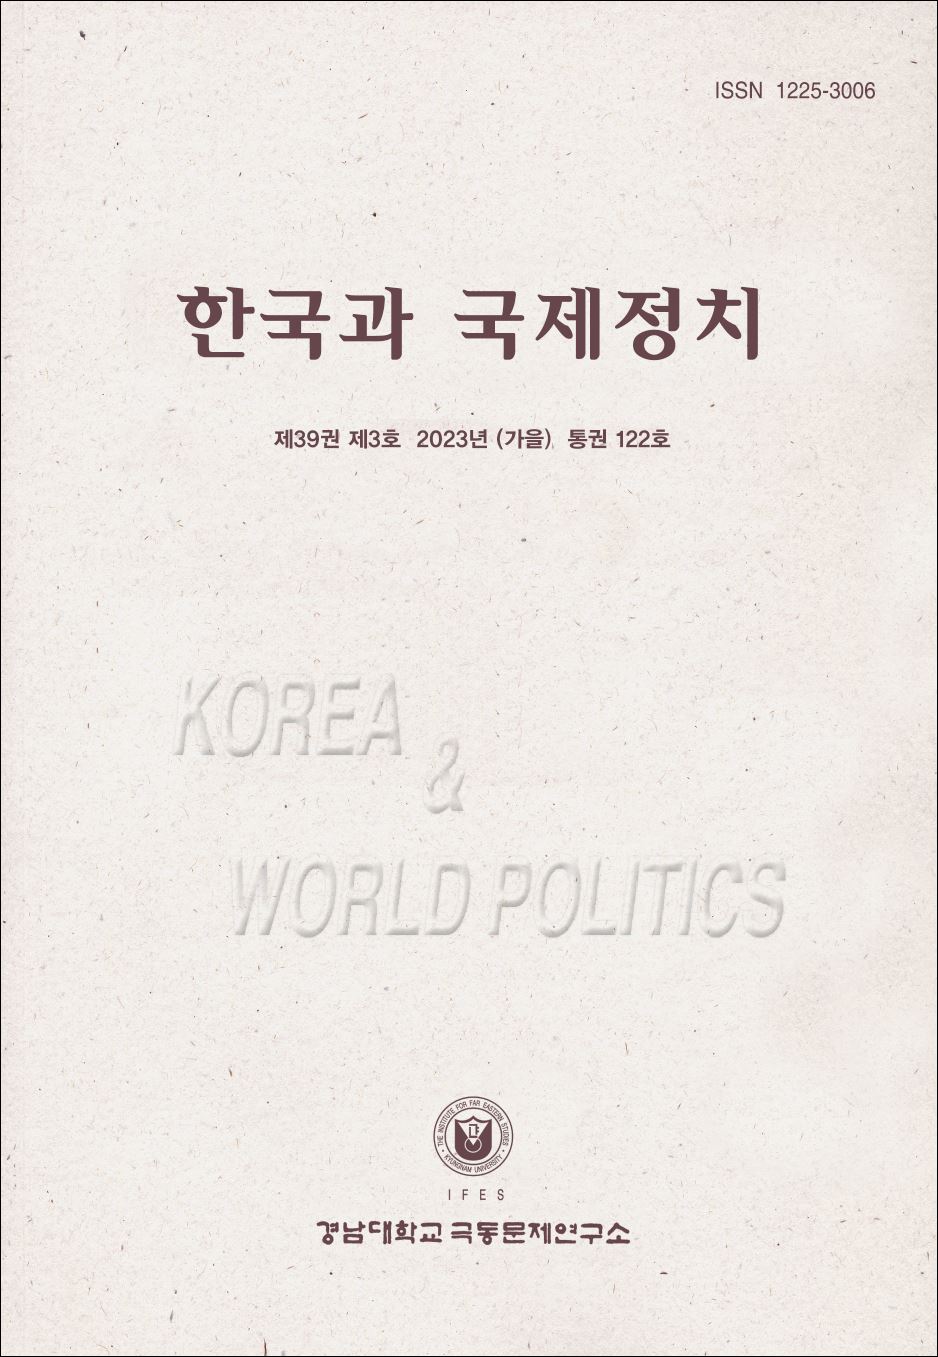 Korea and World Politics, Vol.39, No.3